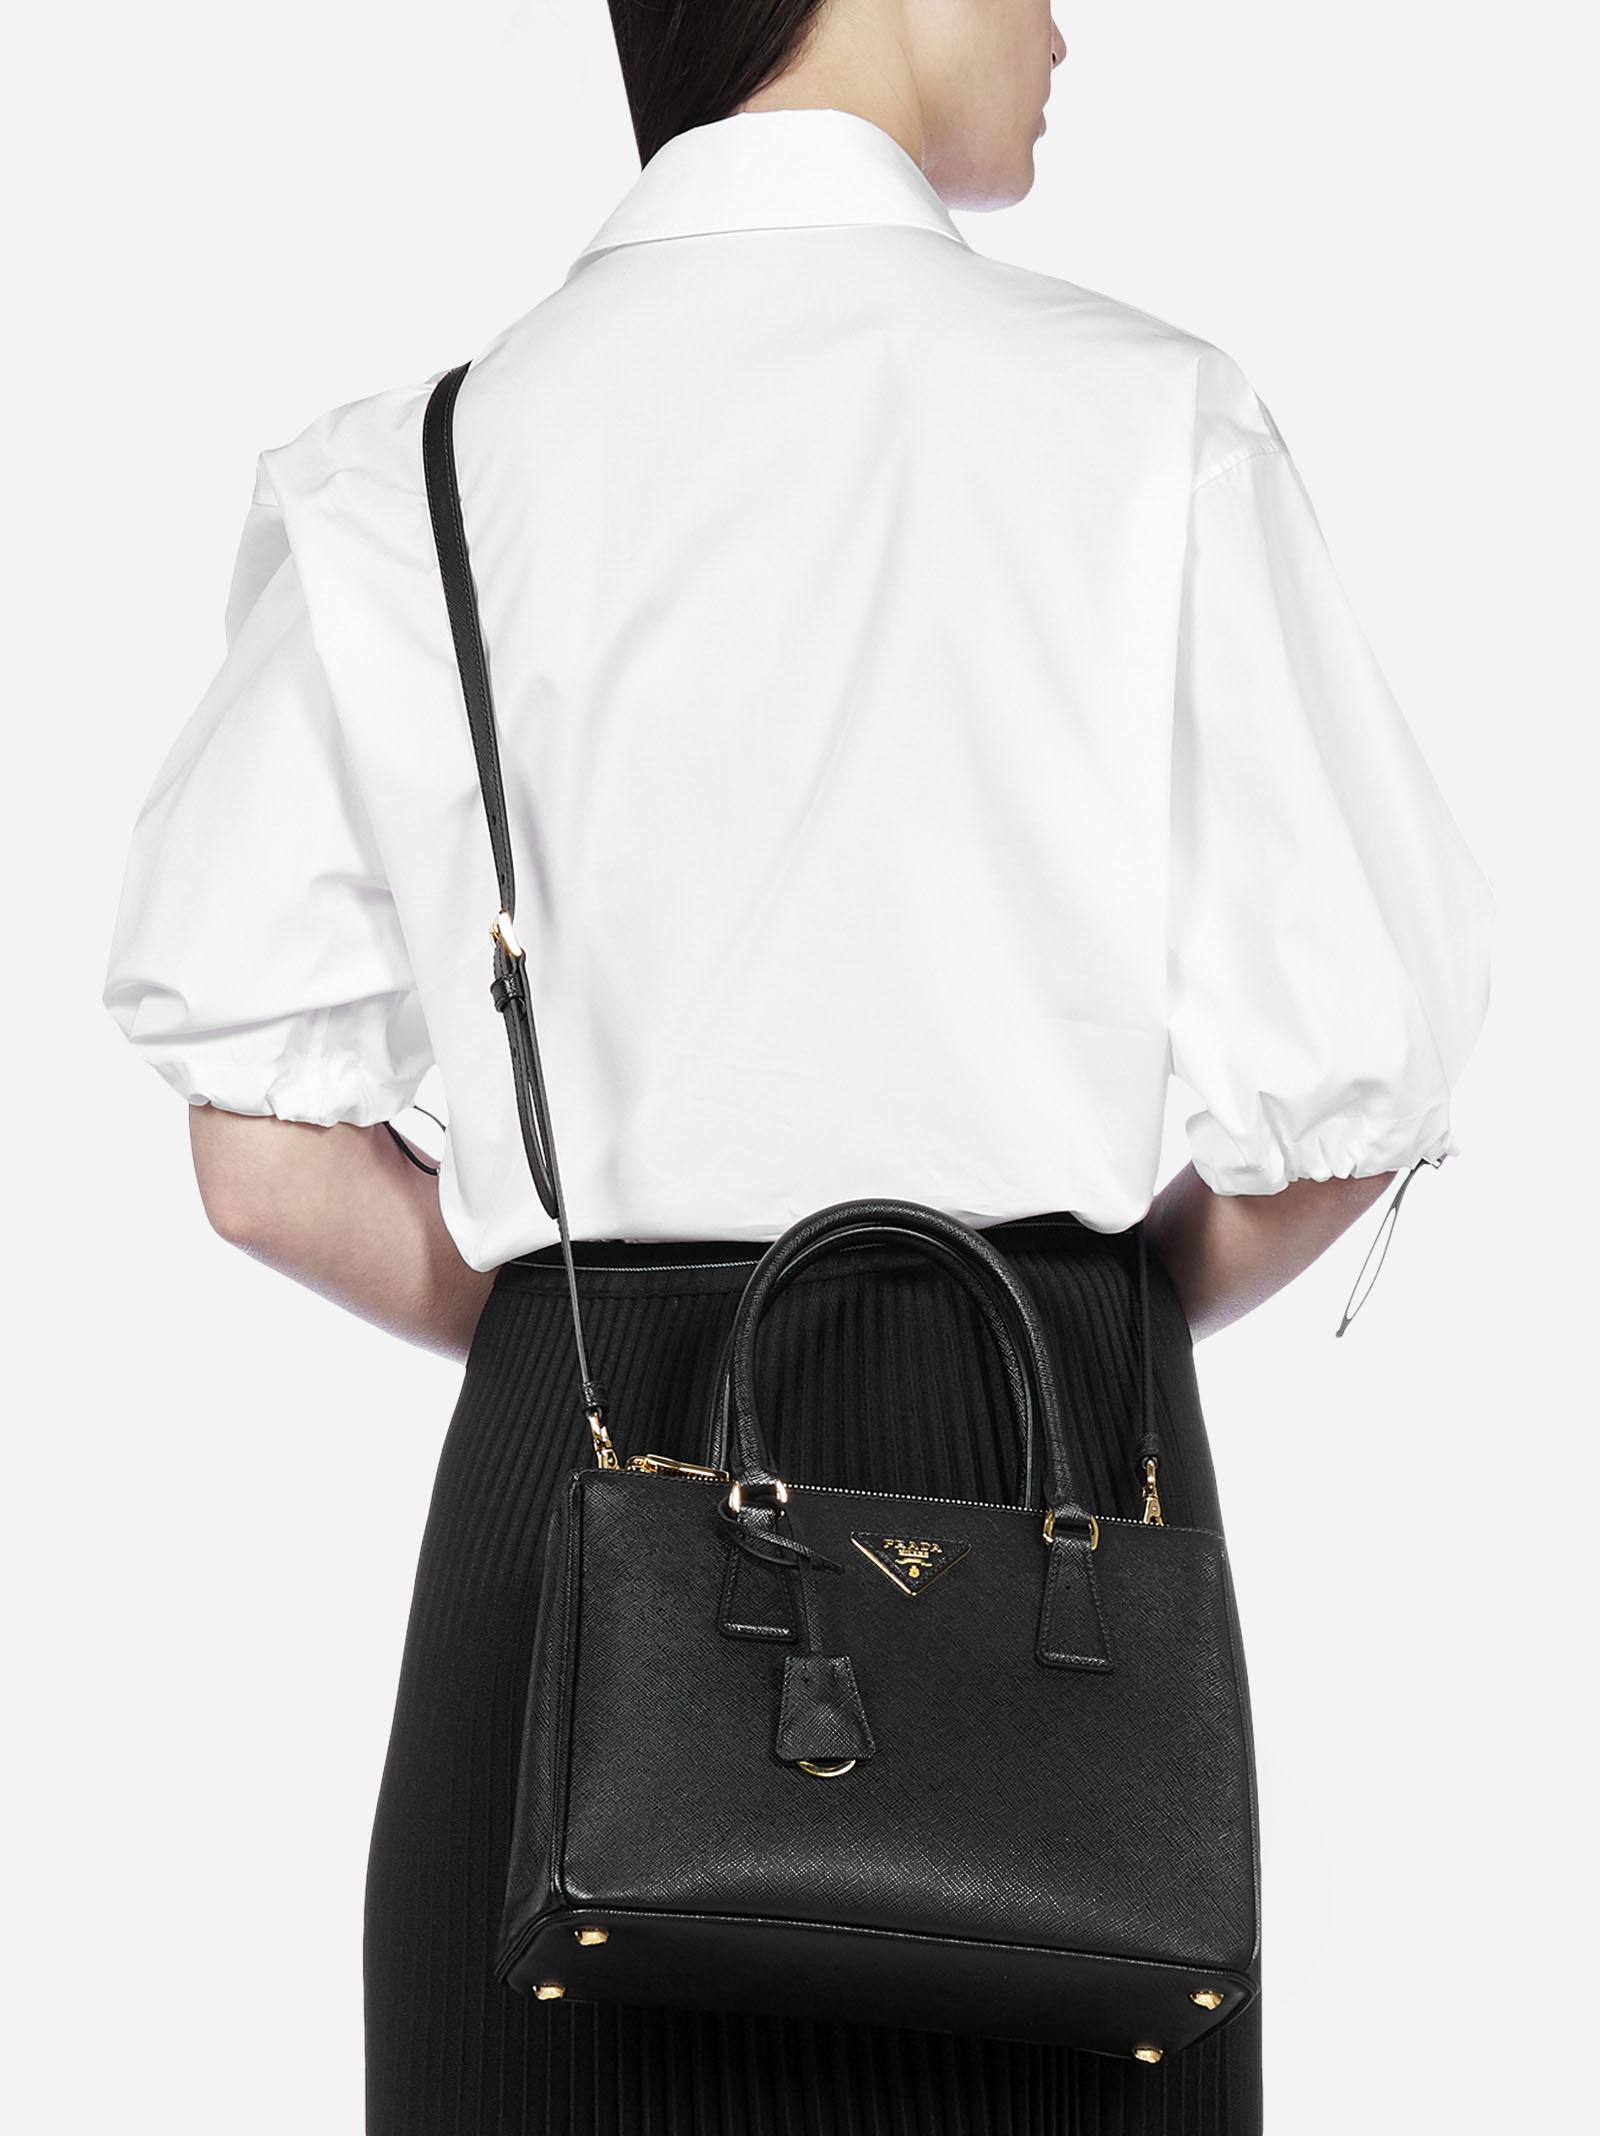 Prada Galleria Small Saffiano Leather Bag in Black